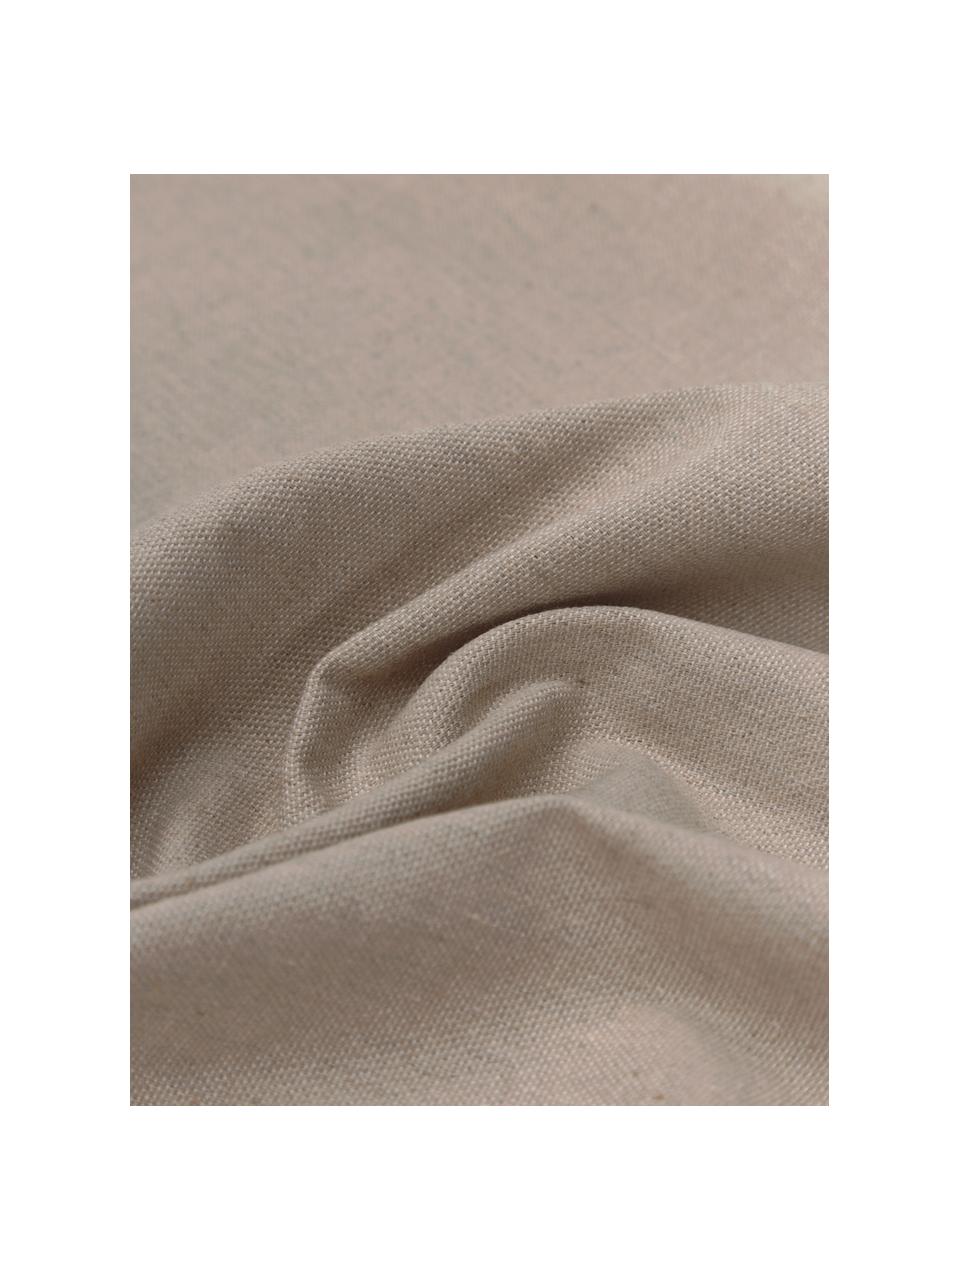 Hamamtuch St Tropez mit Streifen und Fransen, 100% Baumwolle, Beige, Weiss, B 100 x L 200 cm